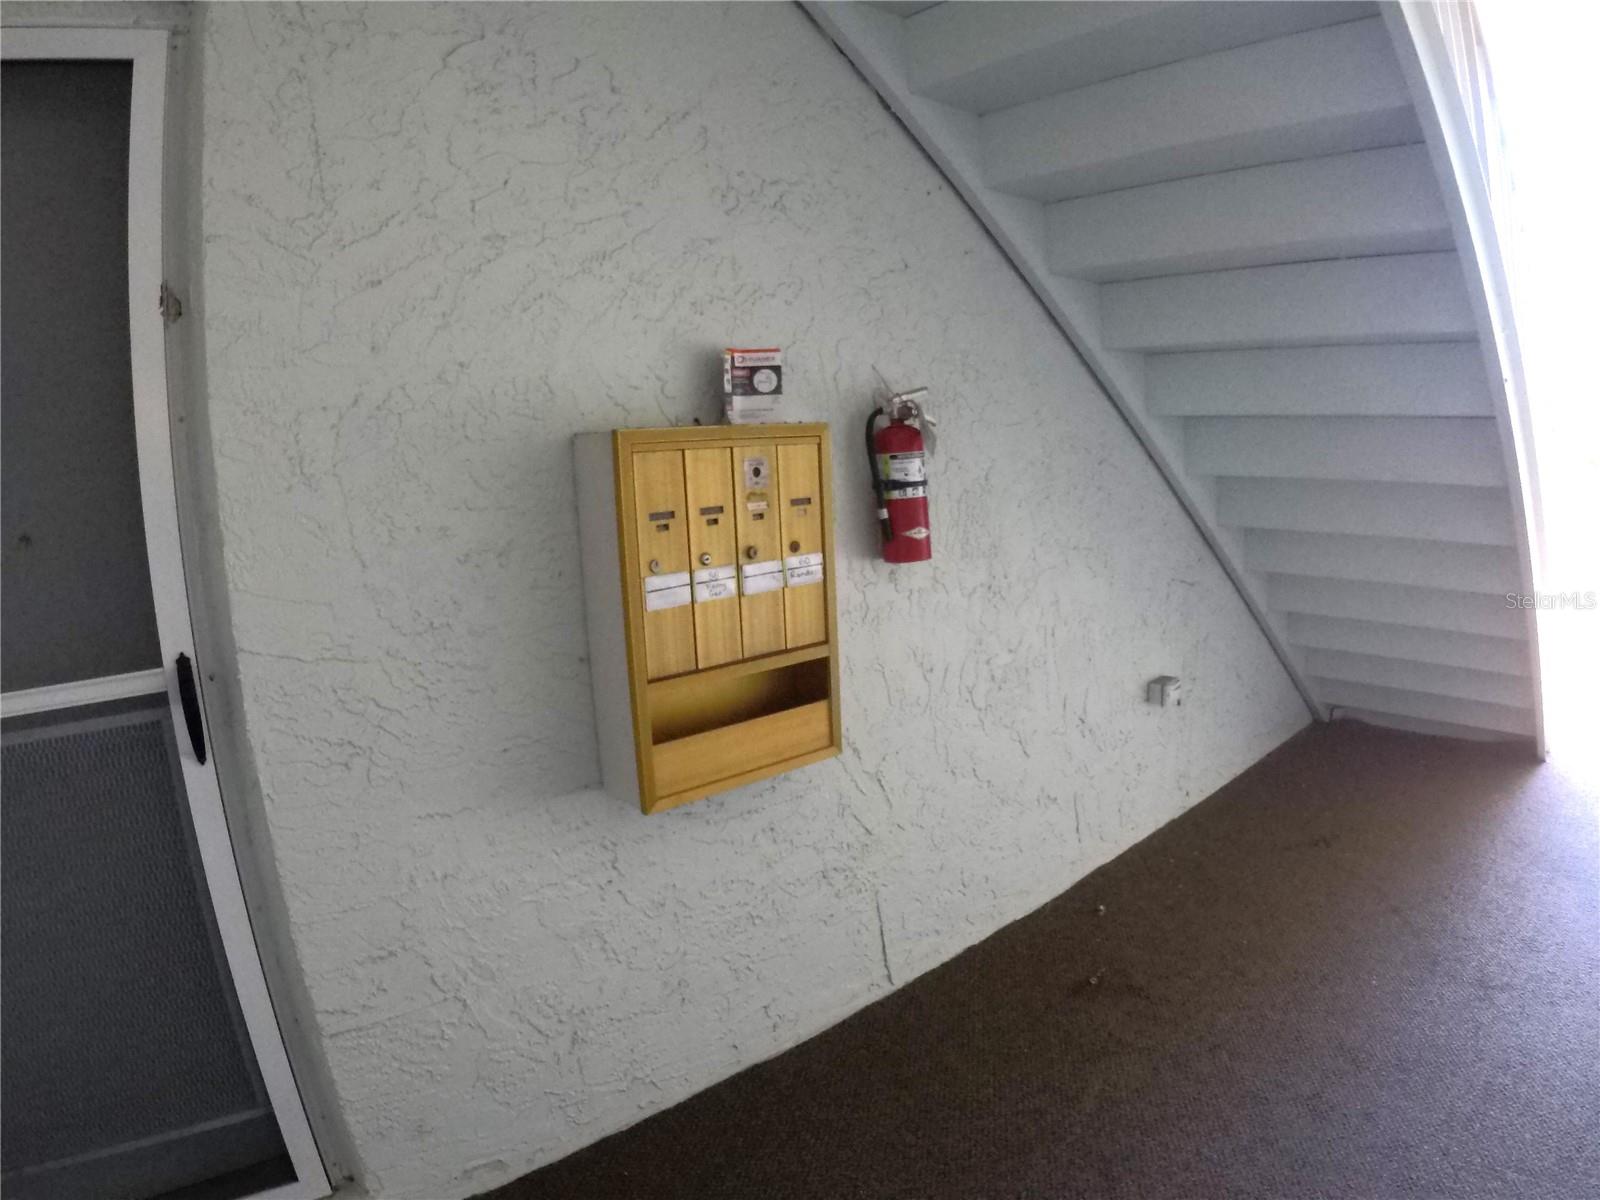 Mailboxes convenient to front door.